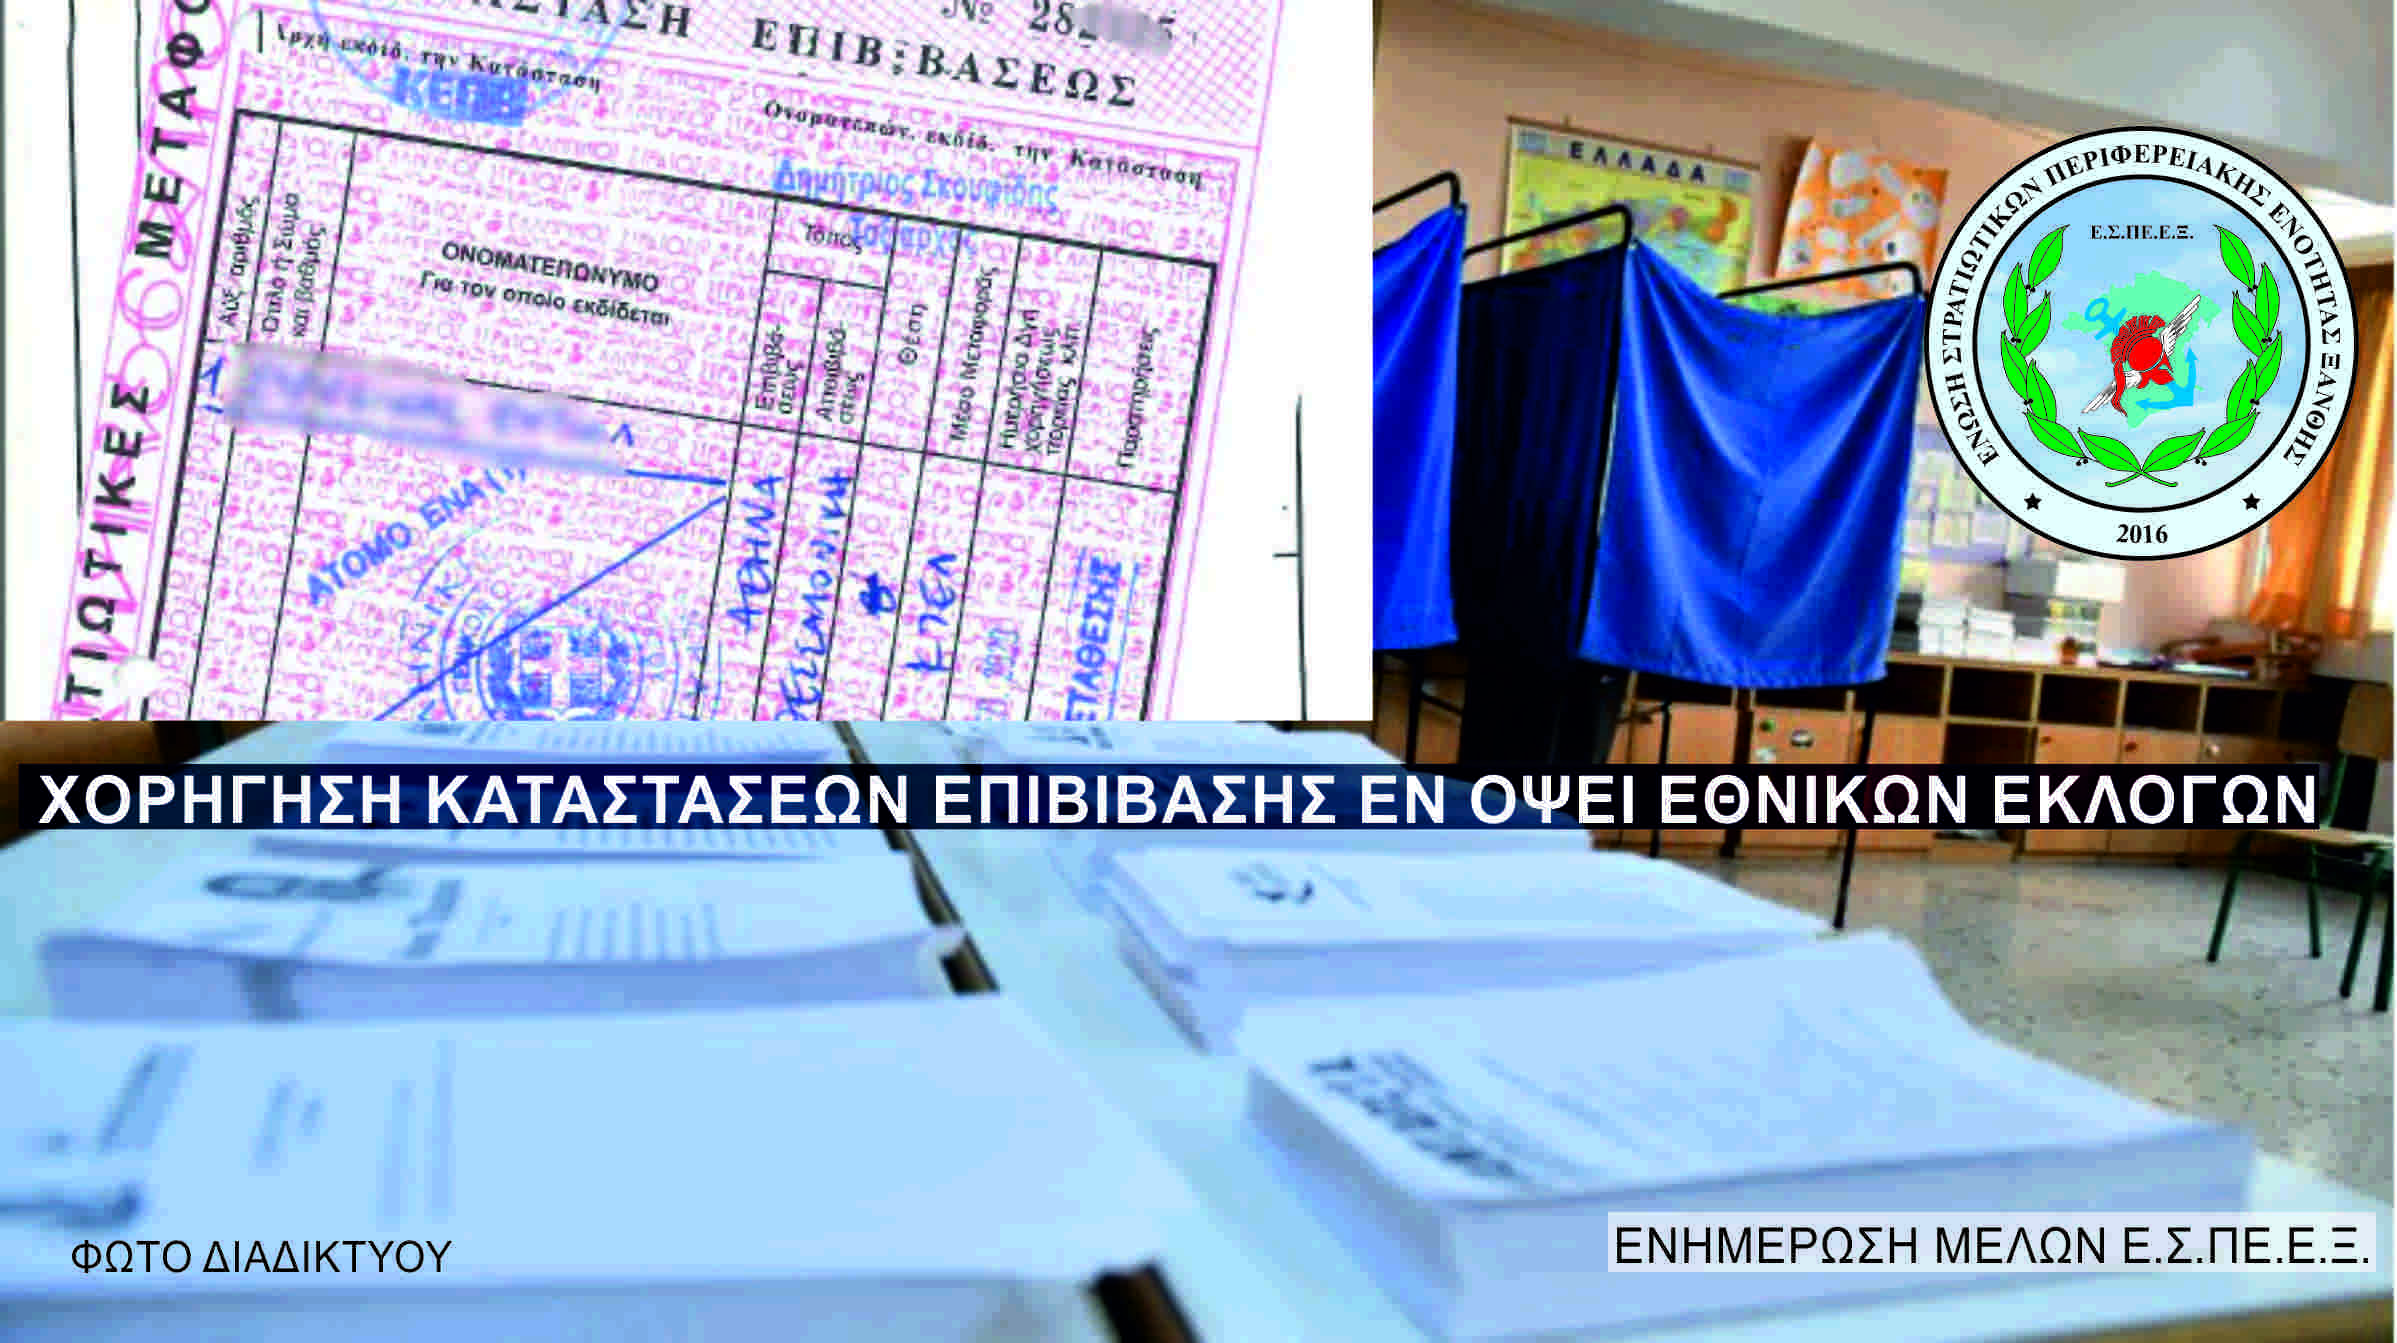 Ε.Σ.ΠΕ.Ε.Ξ. - Χορήγηση καταστάσεων επιβίβασης στα στελέχητων ΕΔ και των οικογενειών τους εν όψει εθνικών εκλογών